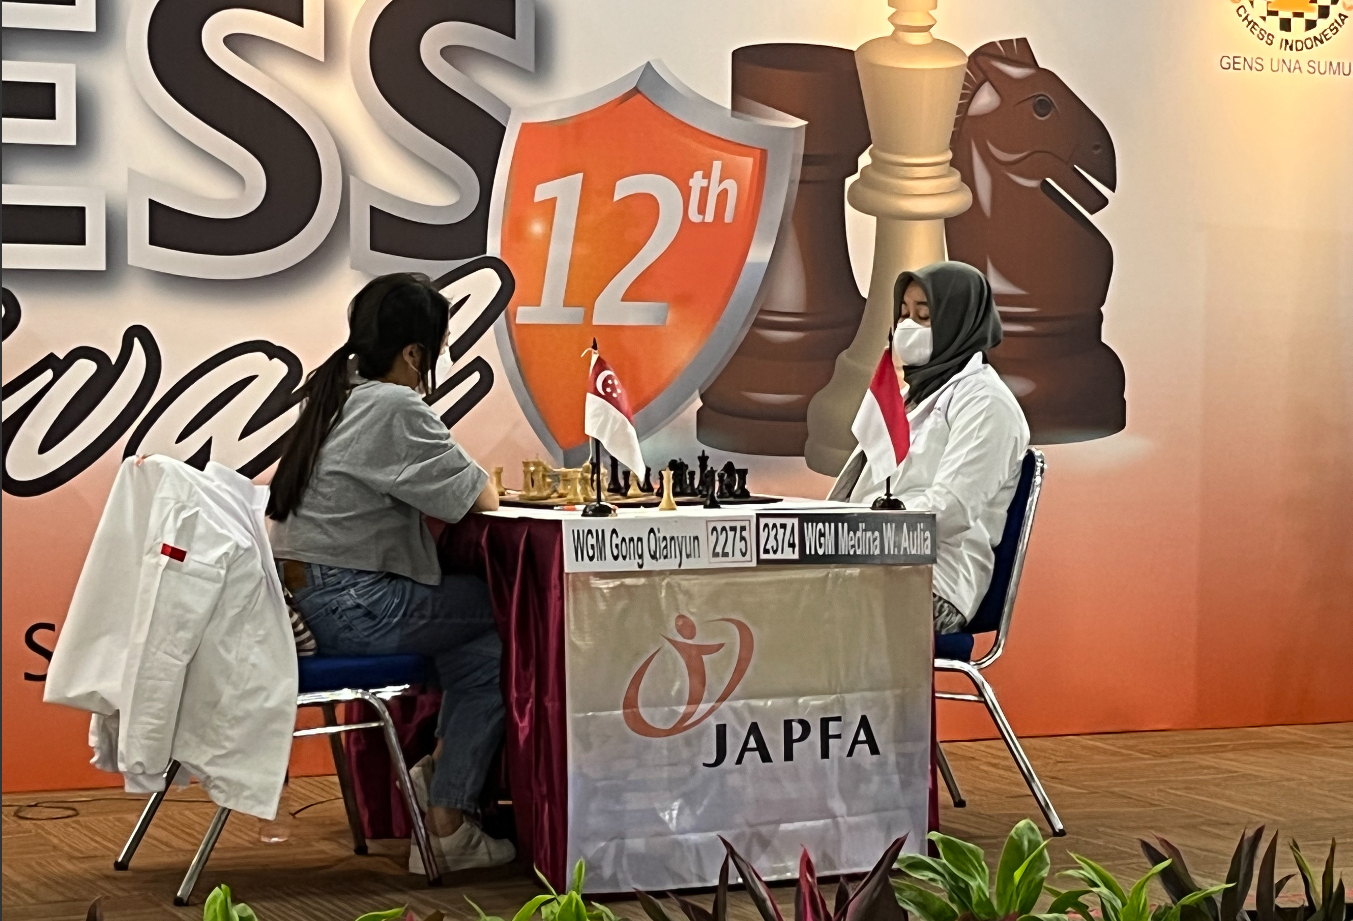 JAPFA Chess Festival Resmi Dibuka, Utut Adianto Sebut Ini Bagian Perjuangan Percasi